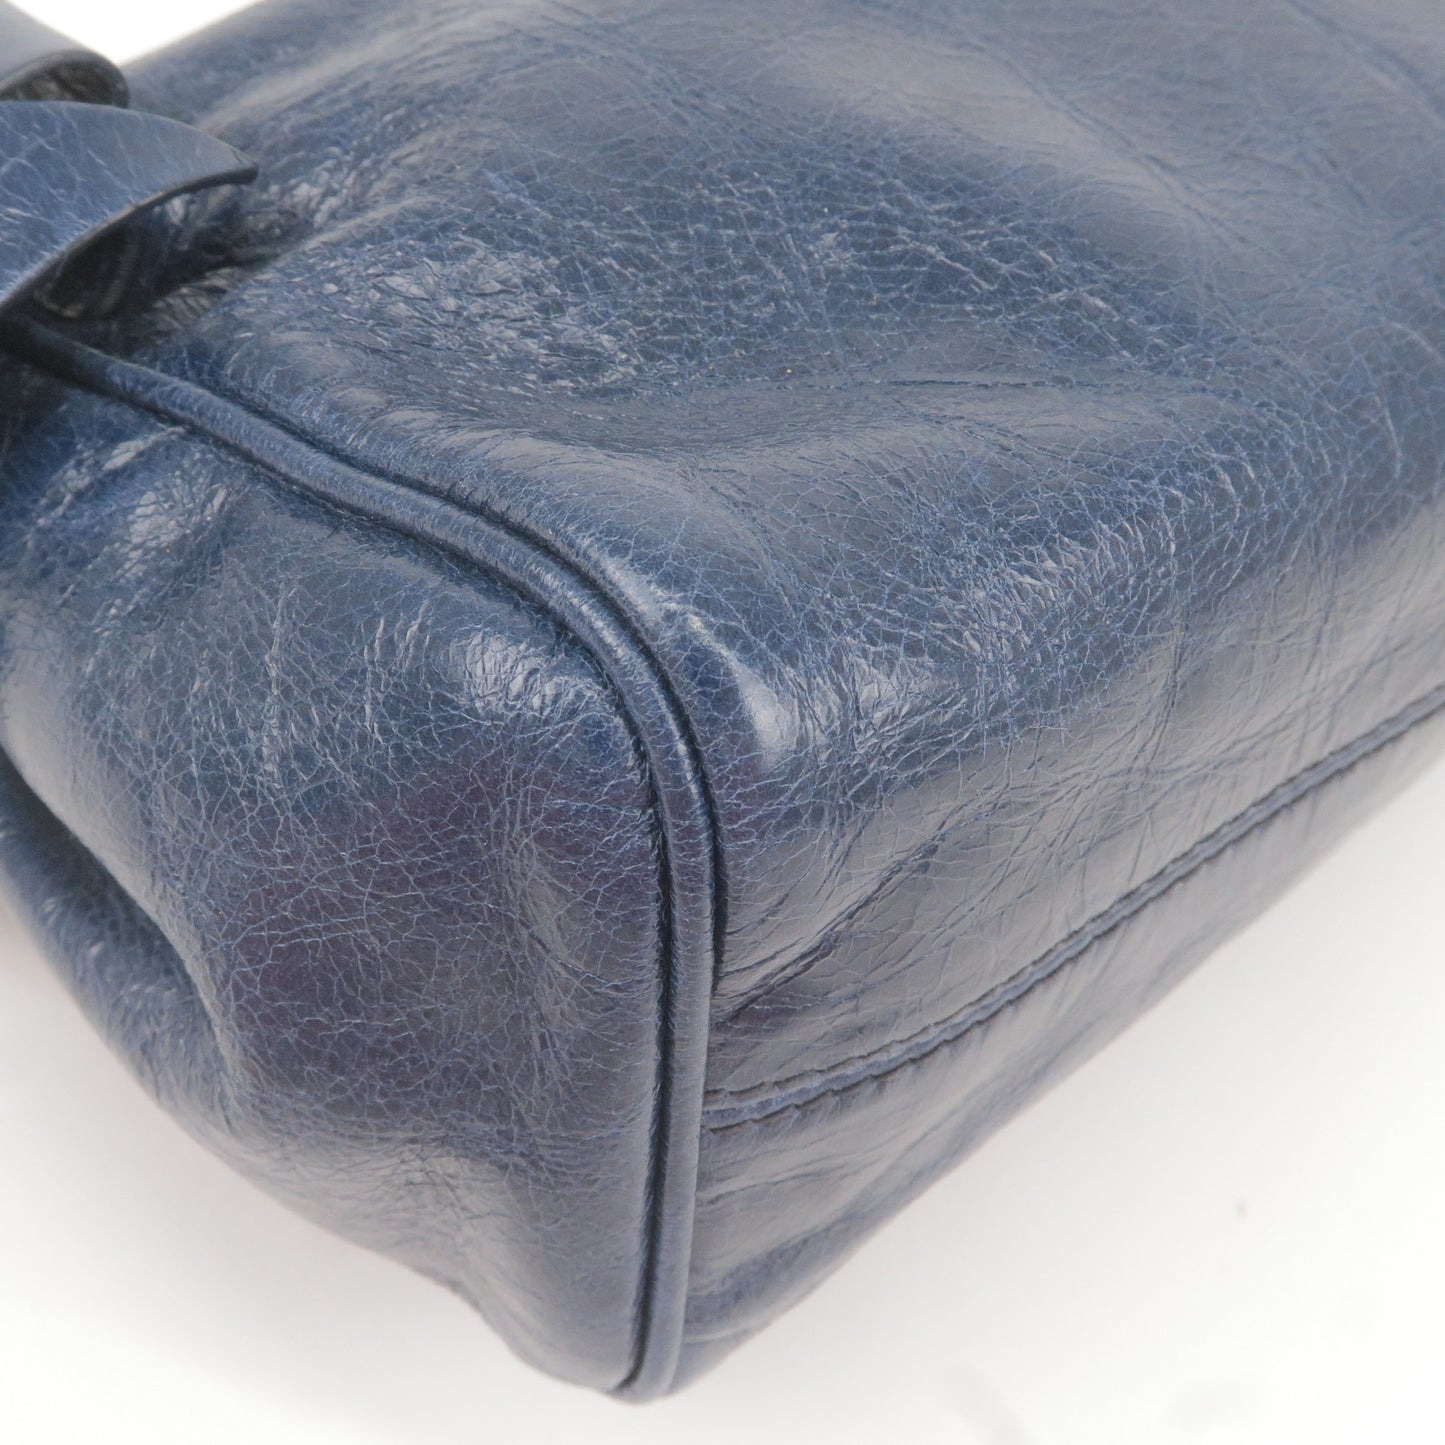 MIU MIU Logo Leather Ribbon Shoulder Bag Purse Blue